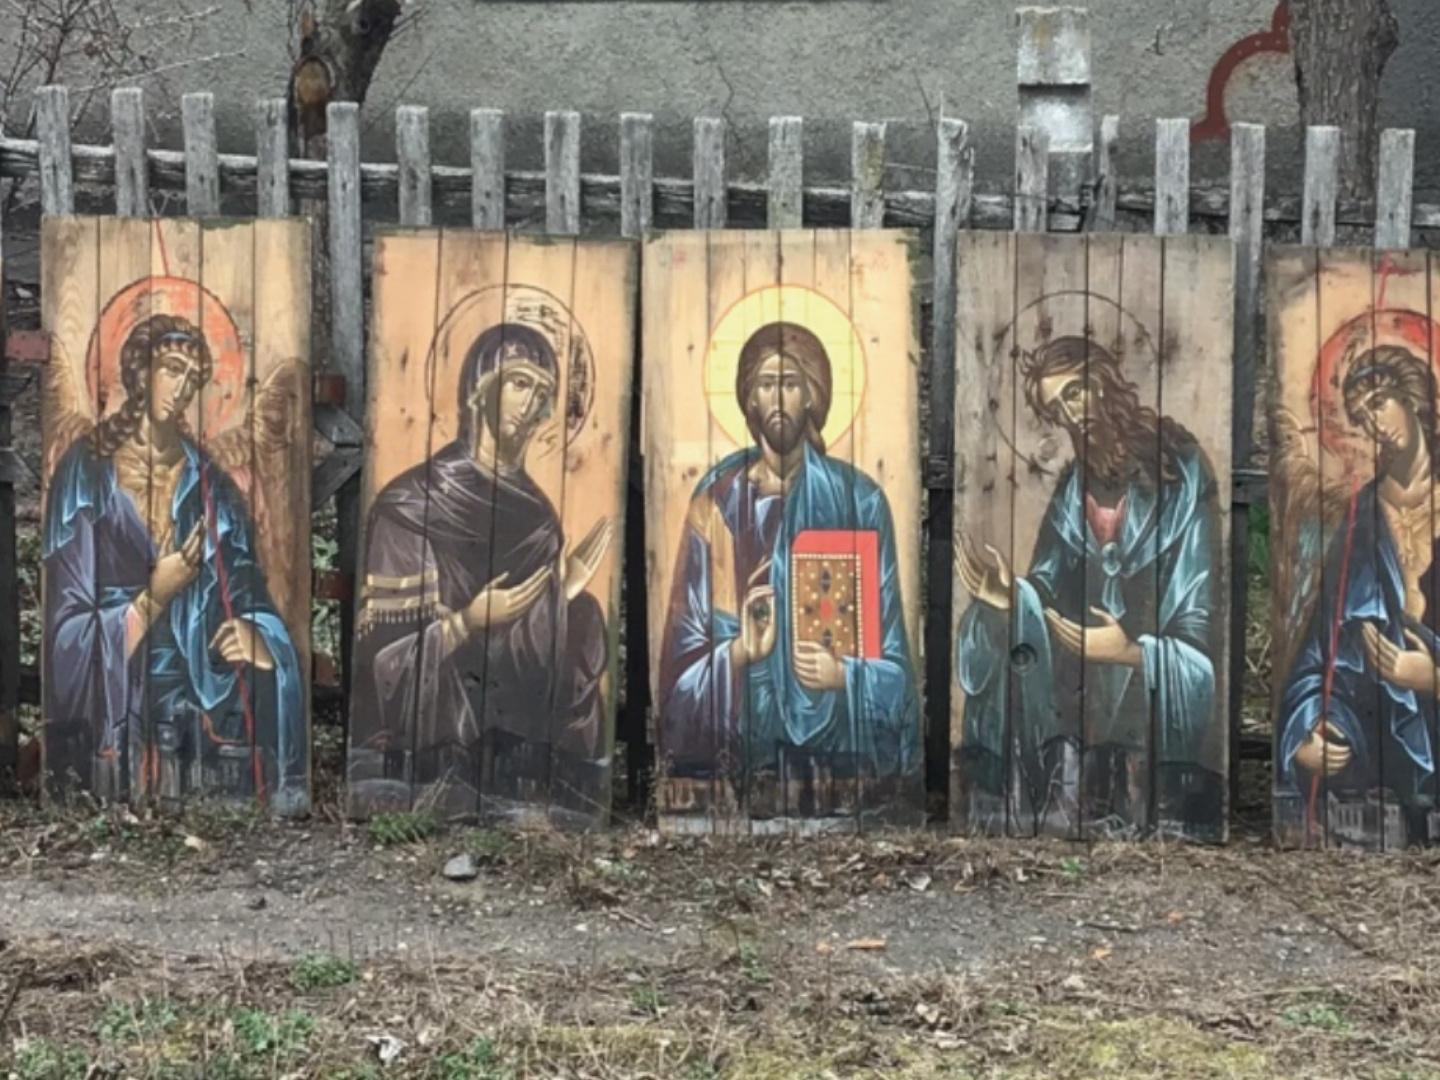 Ikonen, geschrieben auf Böden von Munitionskisten - Zyklus Mariupol